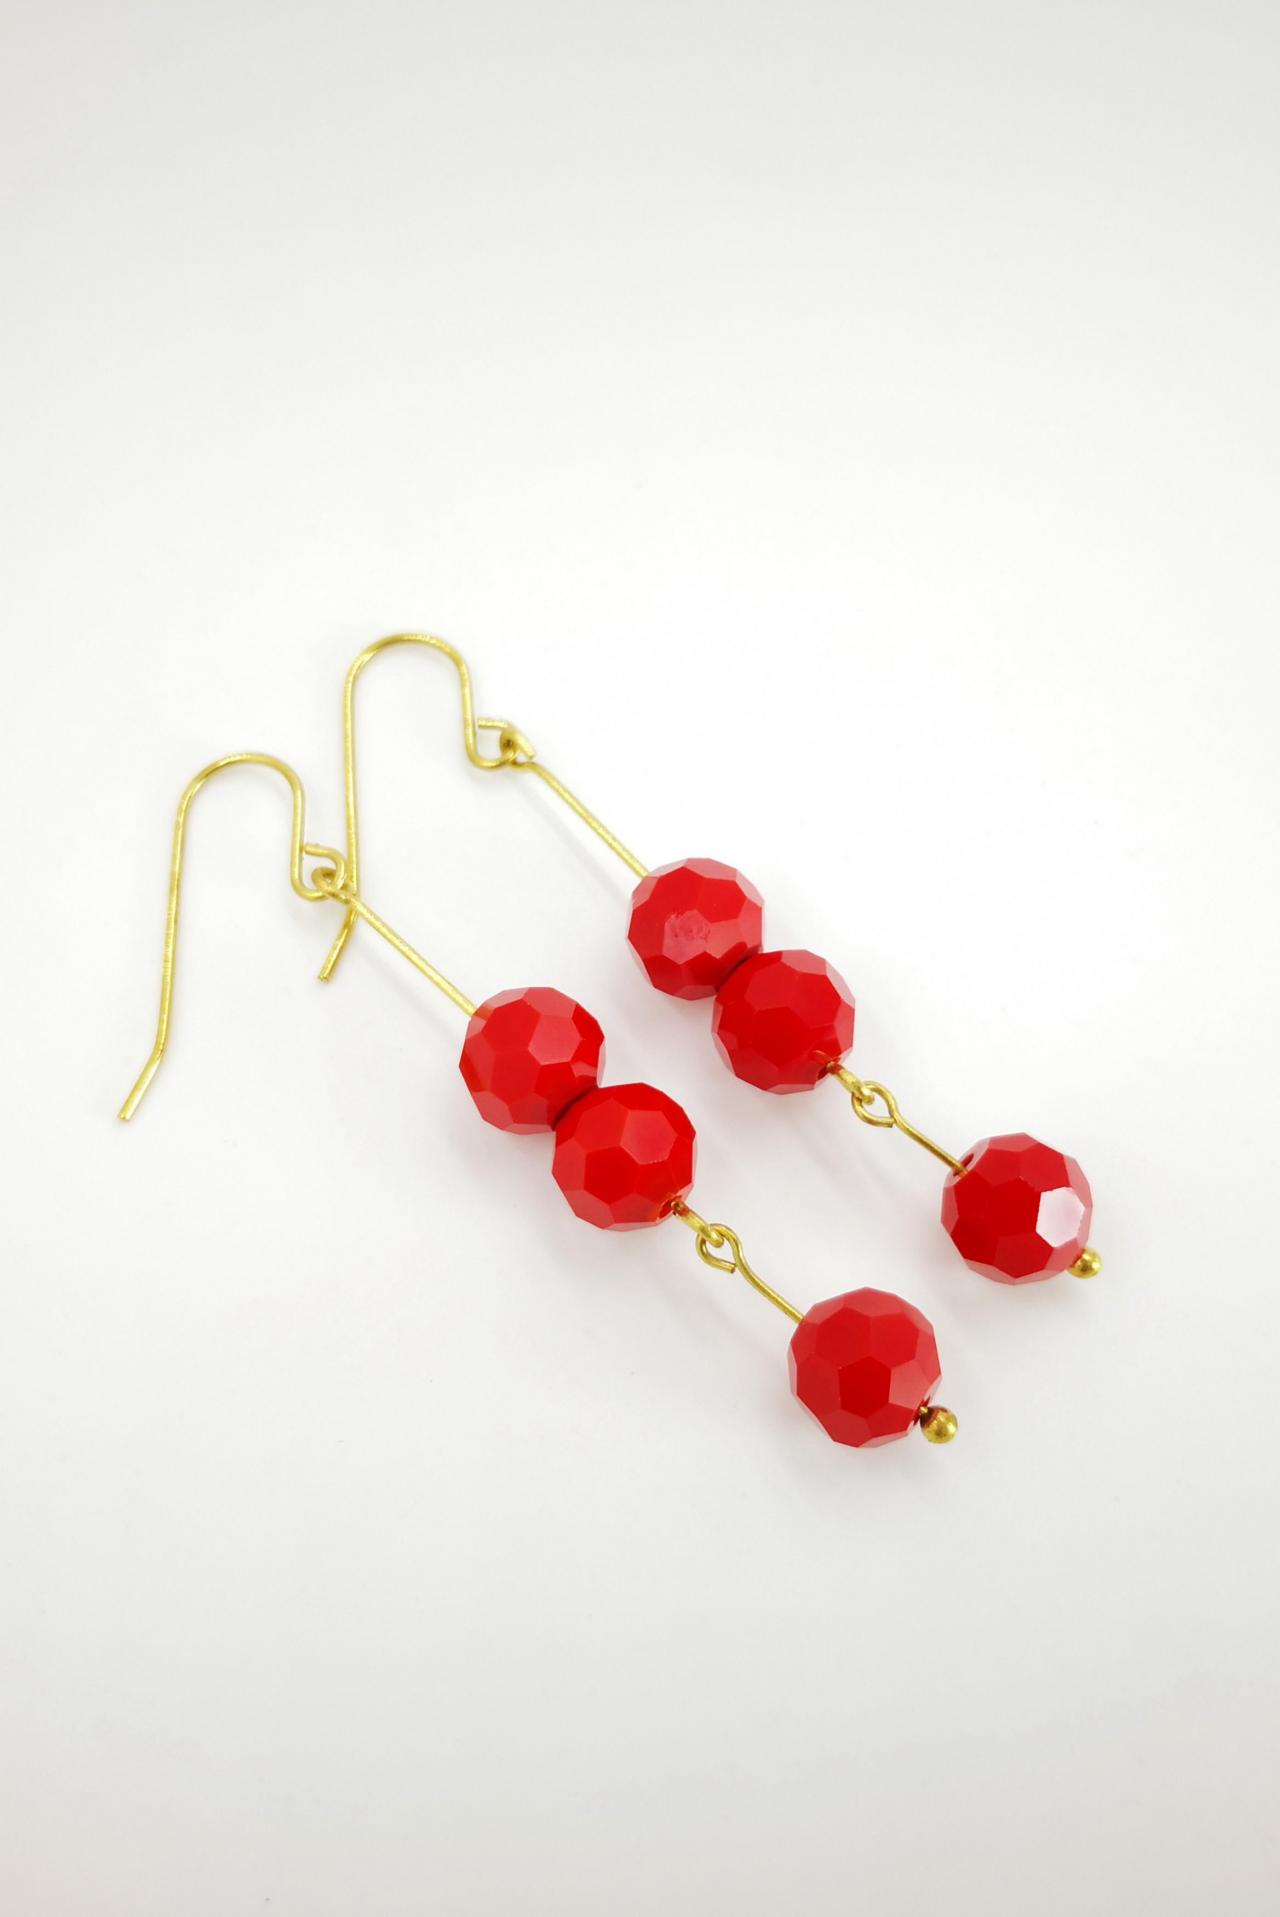 Elegant Earrings Beaded Minimalist Earrings Red Earrings Beige Earrings Boho Earrings Long Earrings Dangle Earrings